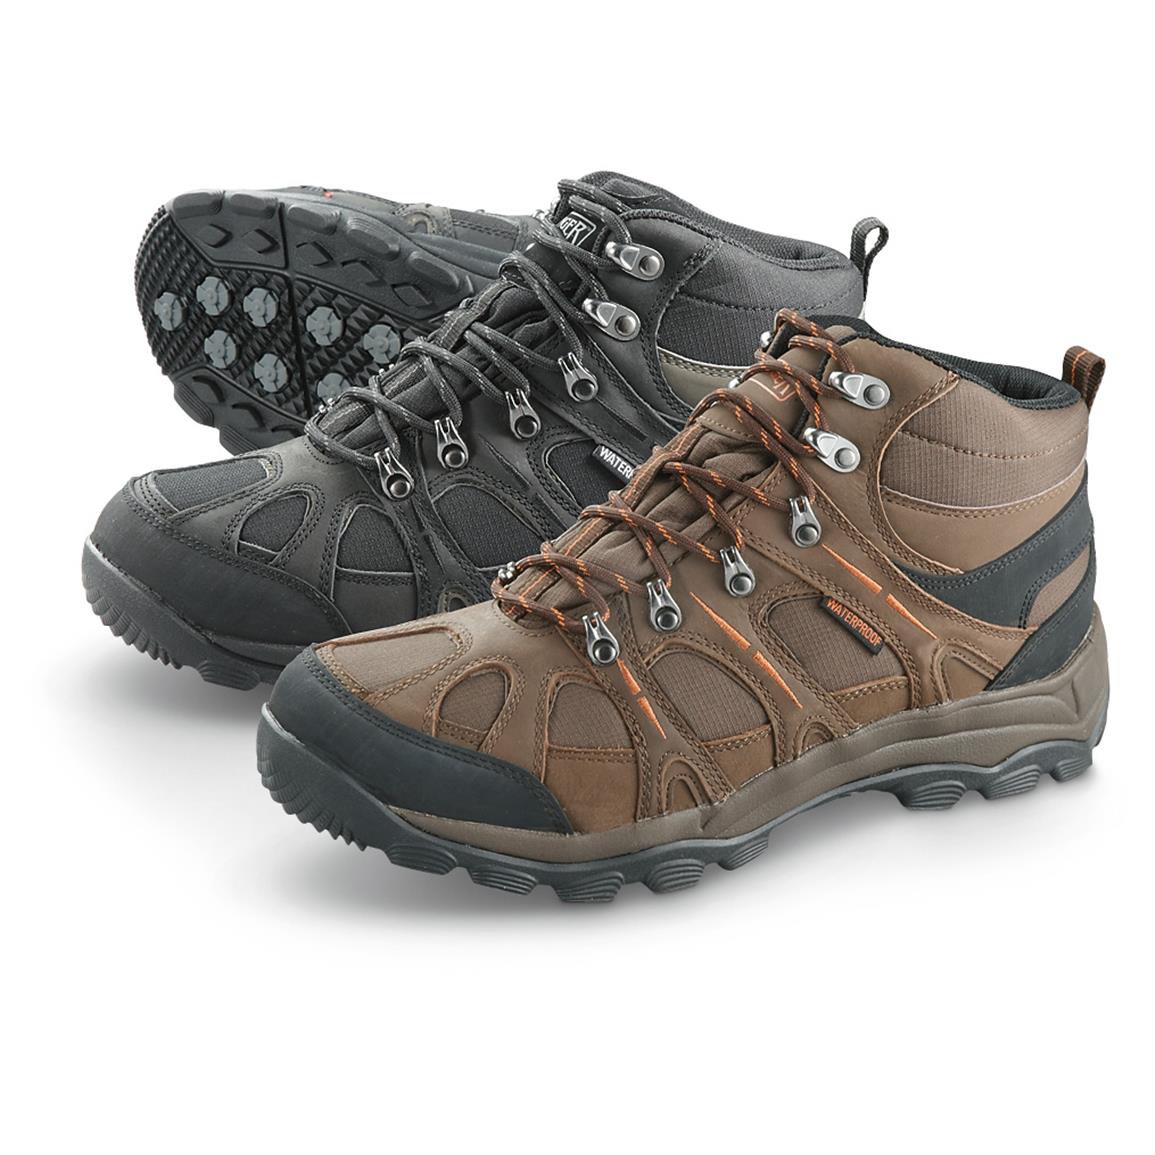 Men's Ranger Cliff Slip-resistant Waterproof Hiking Boots - 620354 ...